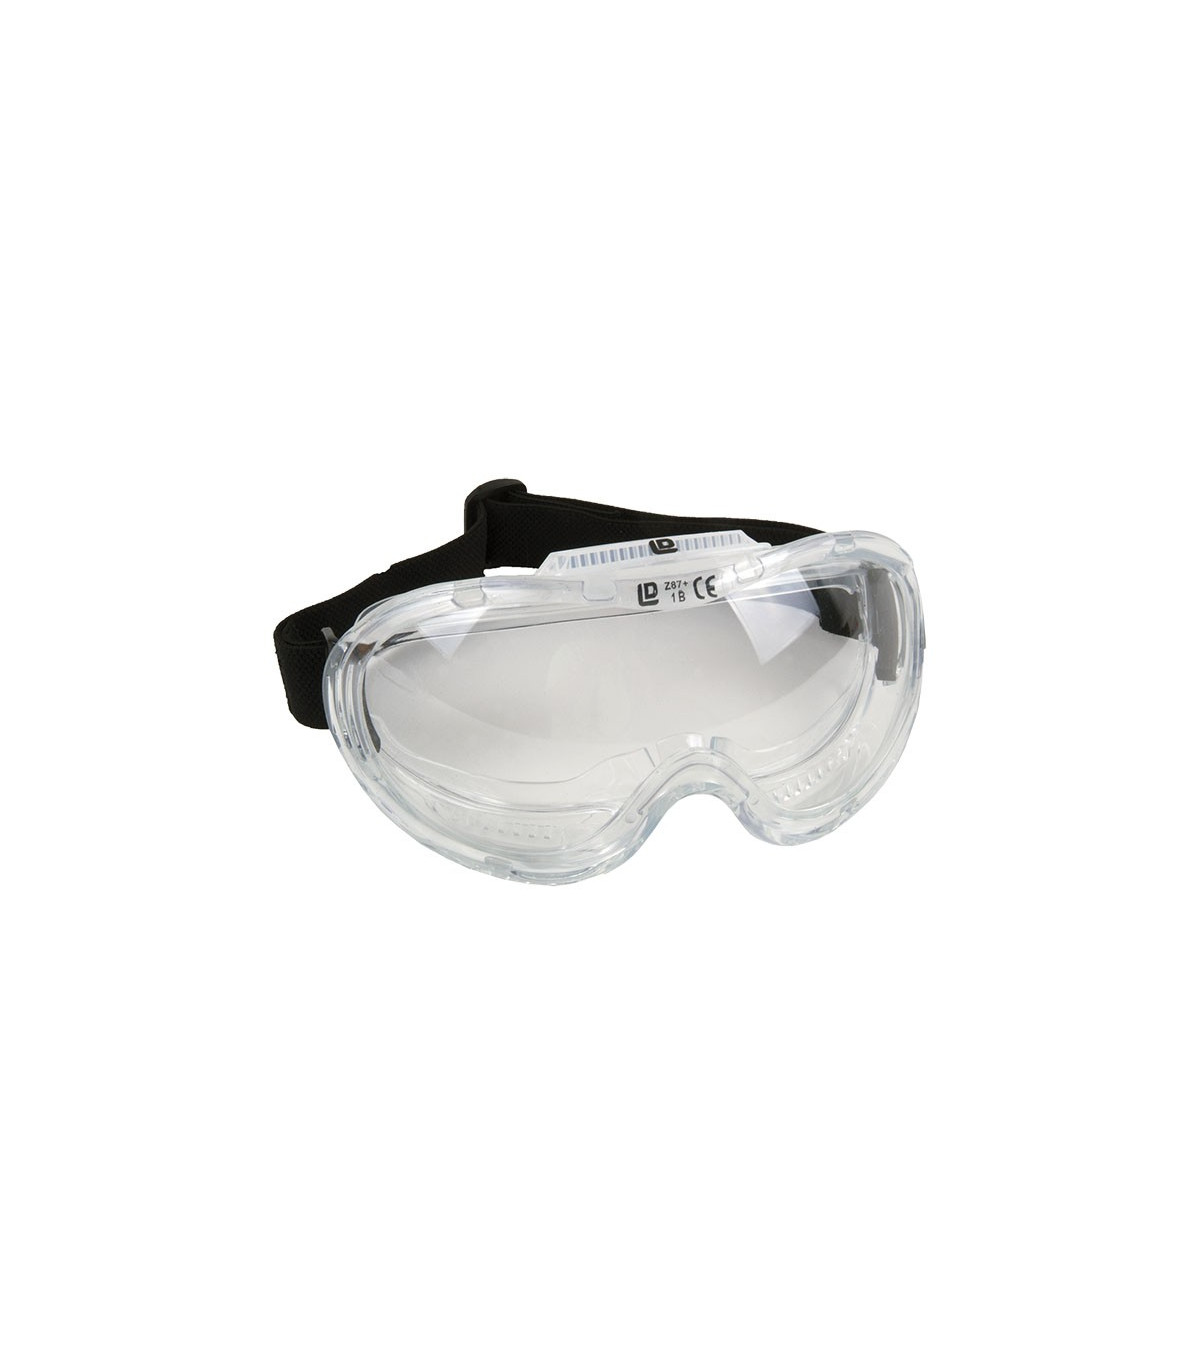 Gafas Seguridad Visión Panorámica, transparentes con ajuste elástico.  UNE-EN 166 skrc